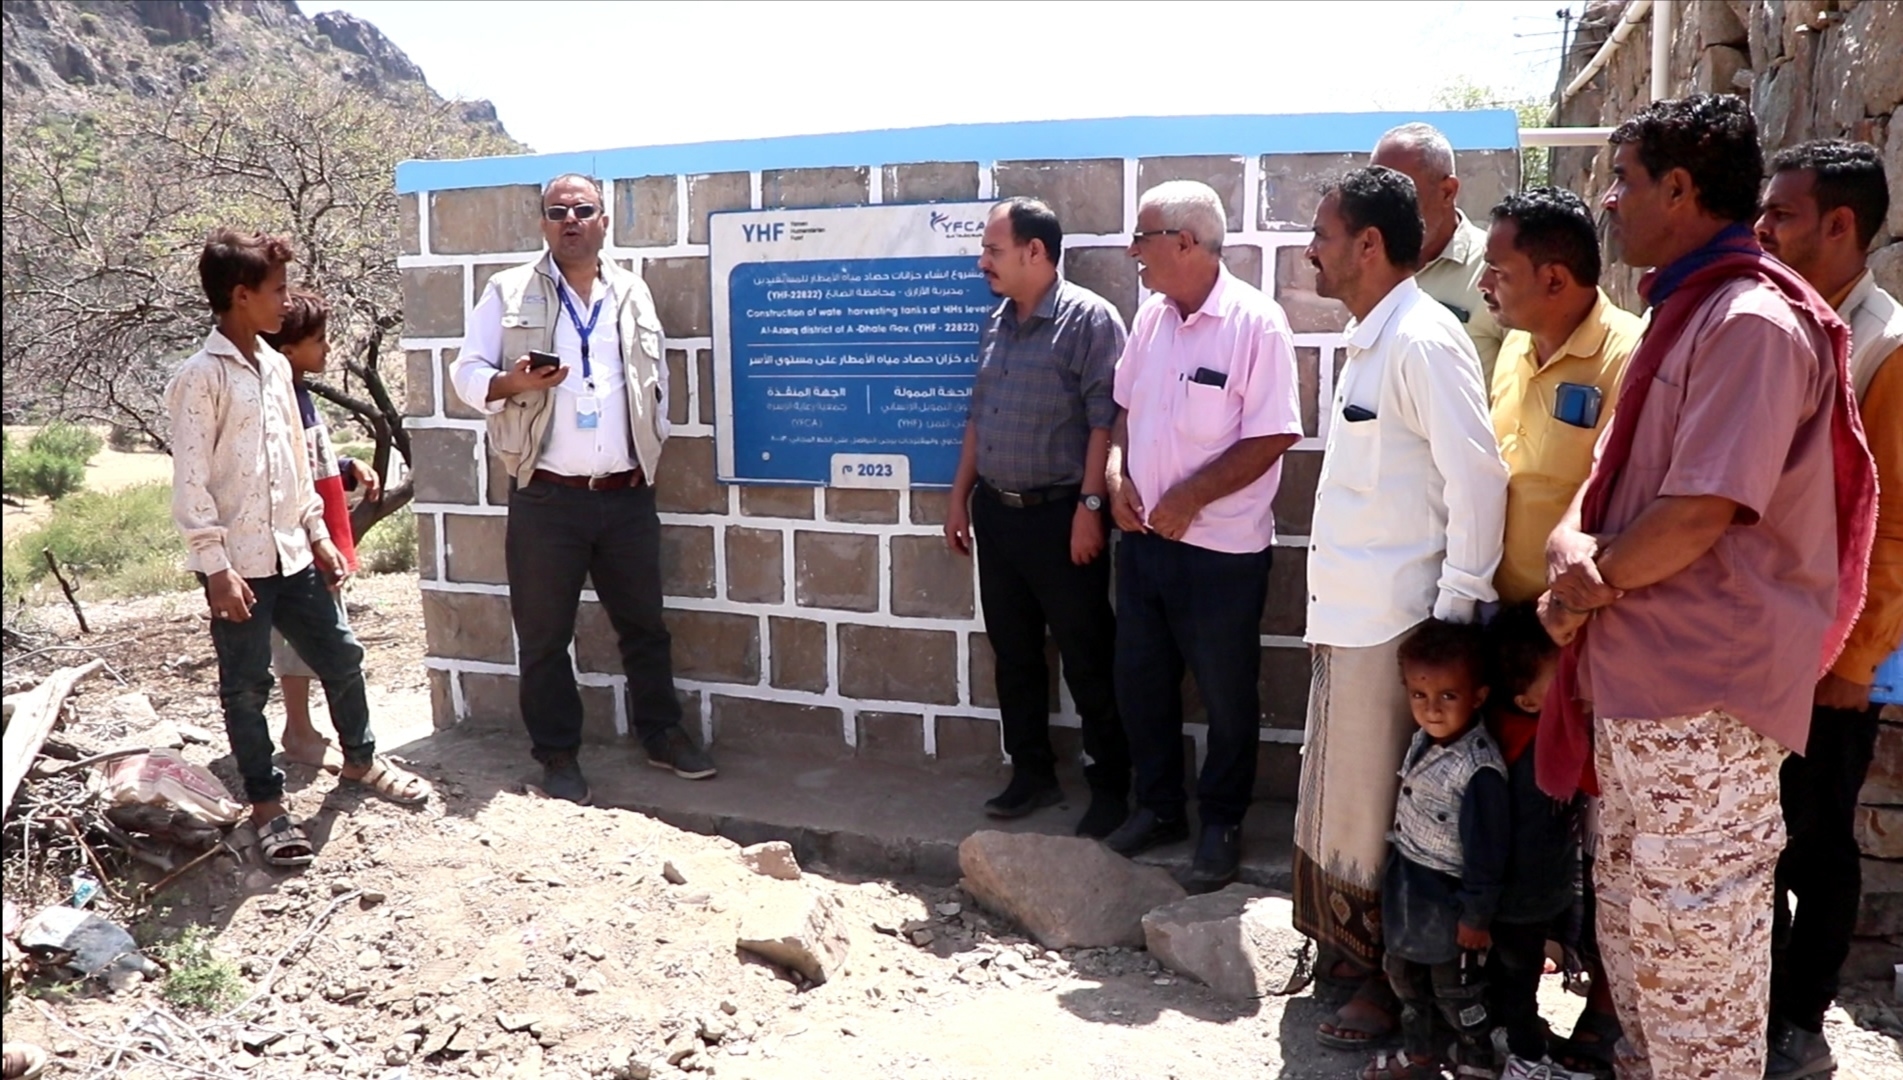 جمعية رعاية الأسرة تسلم 20 خزان من مشروع حصاد مياه الأمطار بمديرية الازارق 